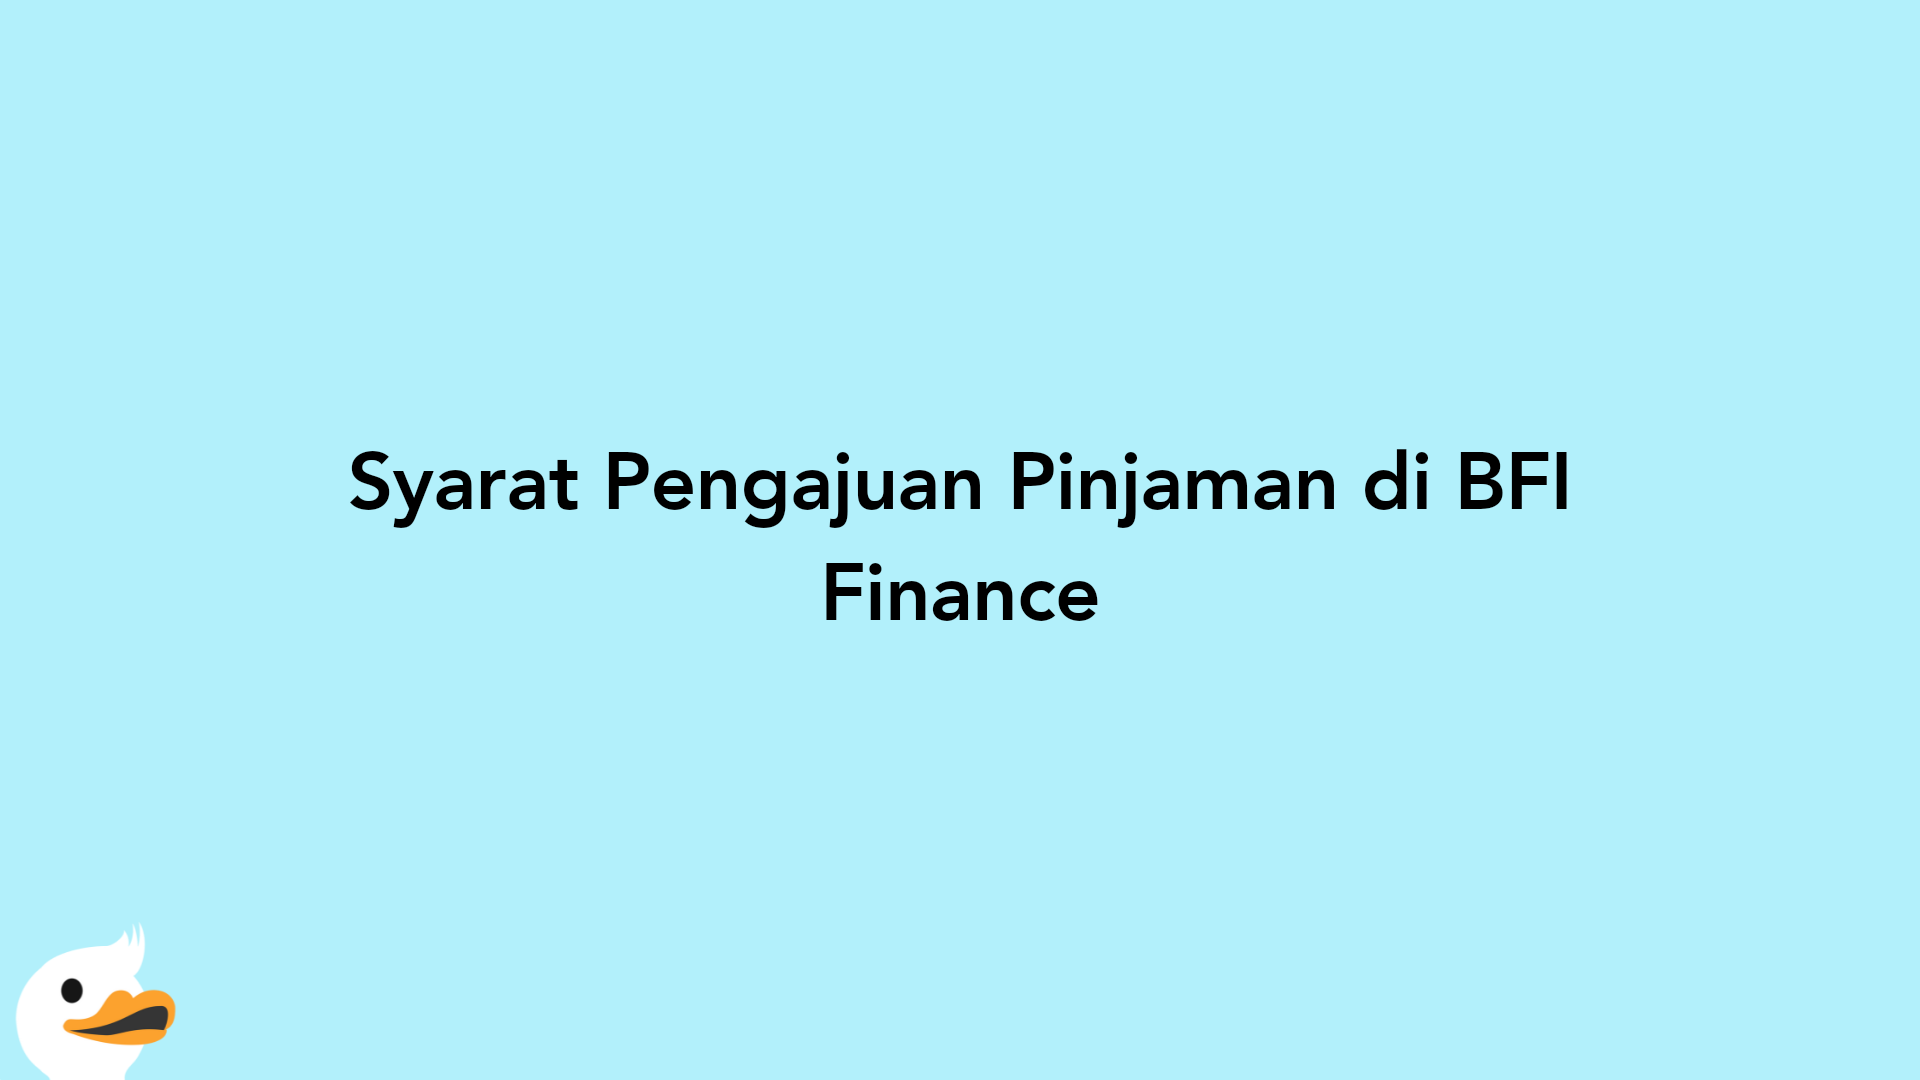 Syarat Pengajuan Pinjaman di BFI Finance